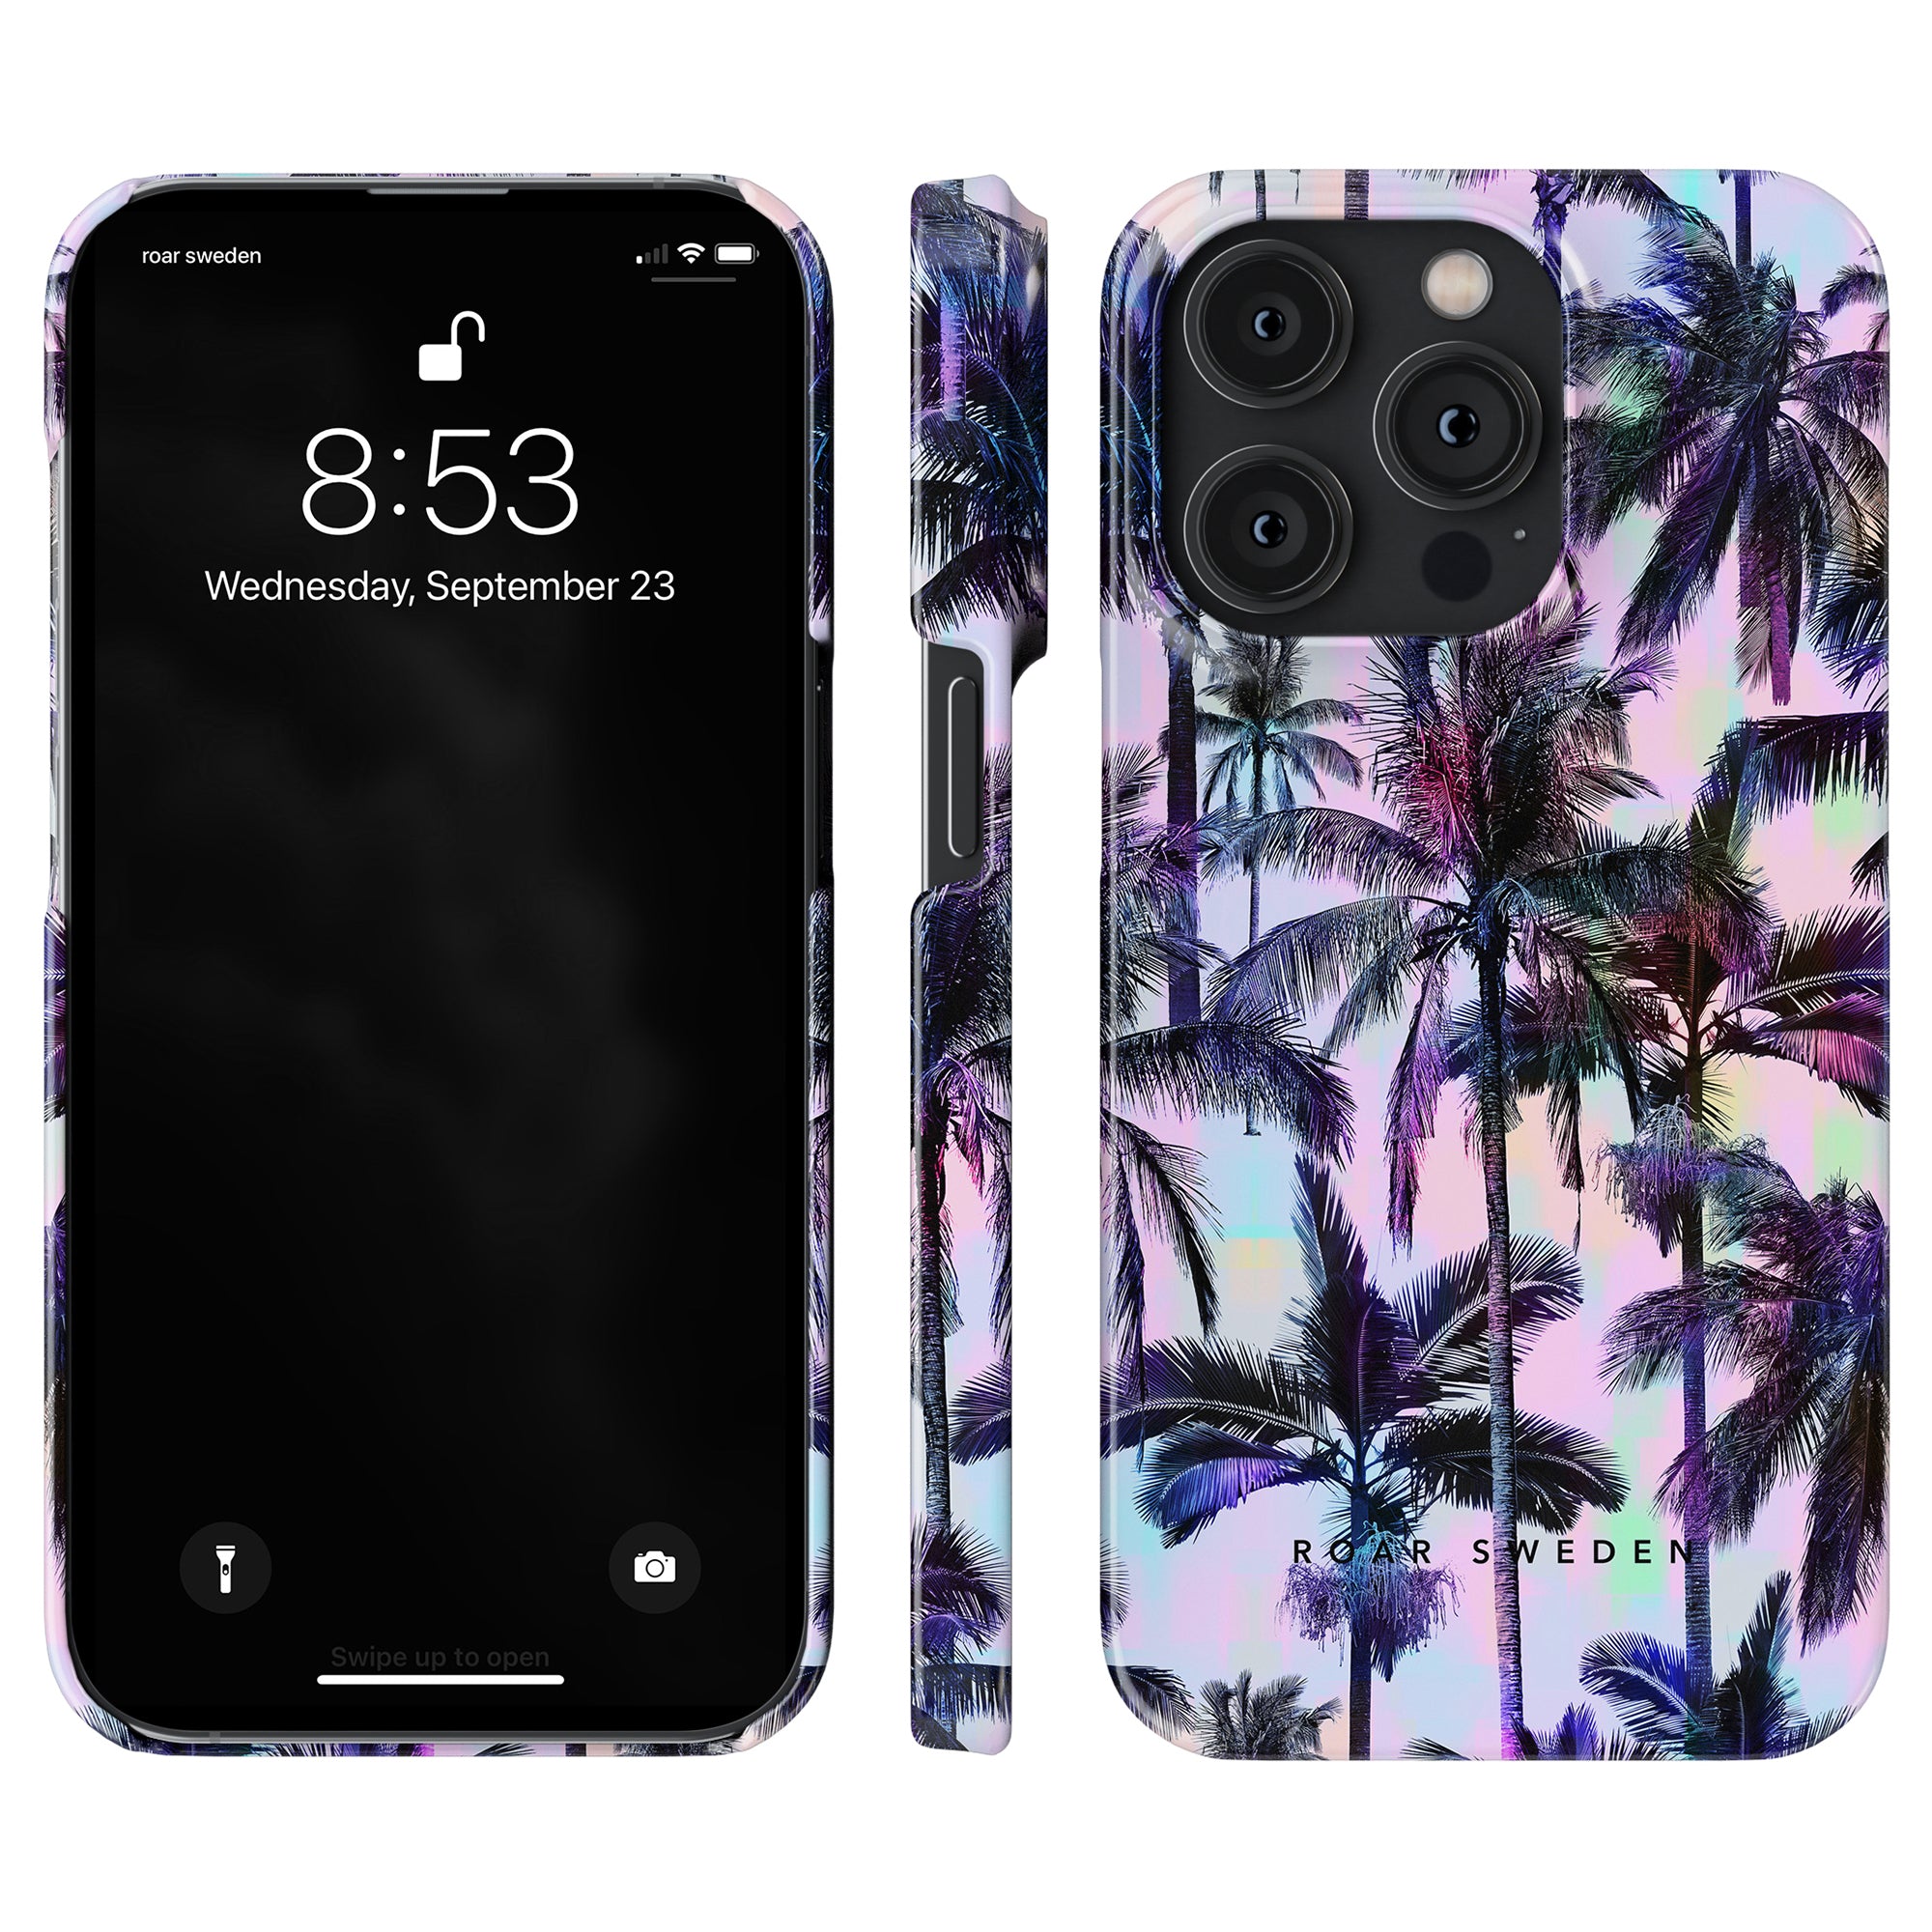 Neon Palms - Slim fodral till iPhone 11 är en trendig och snygg accessoar som kombinerar skydd och estetik. Fodralet har ett vackert designat palmträdsmönster som ger en touch av tropisk elegans till din enhet.